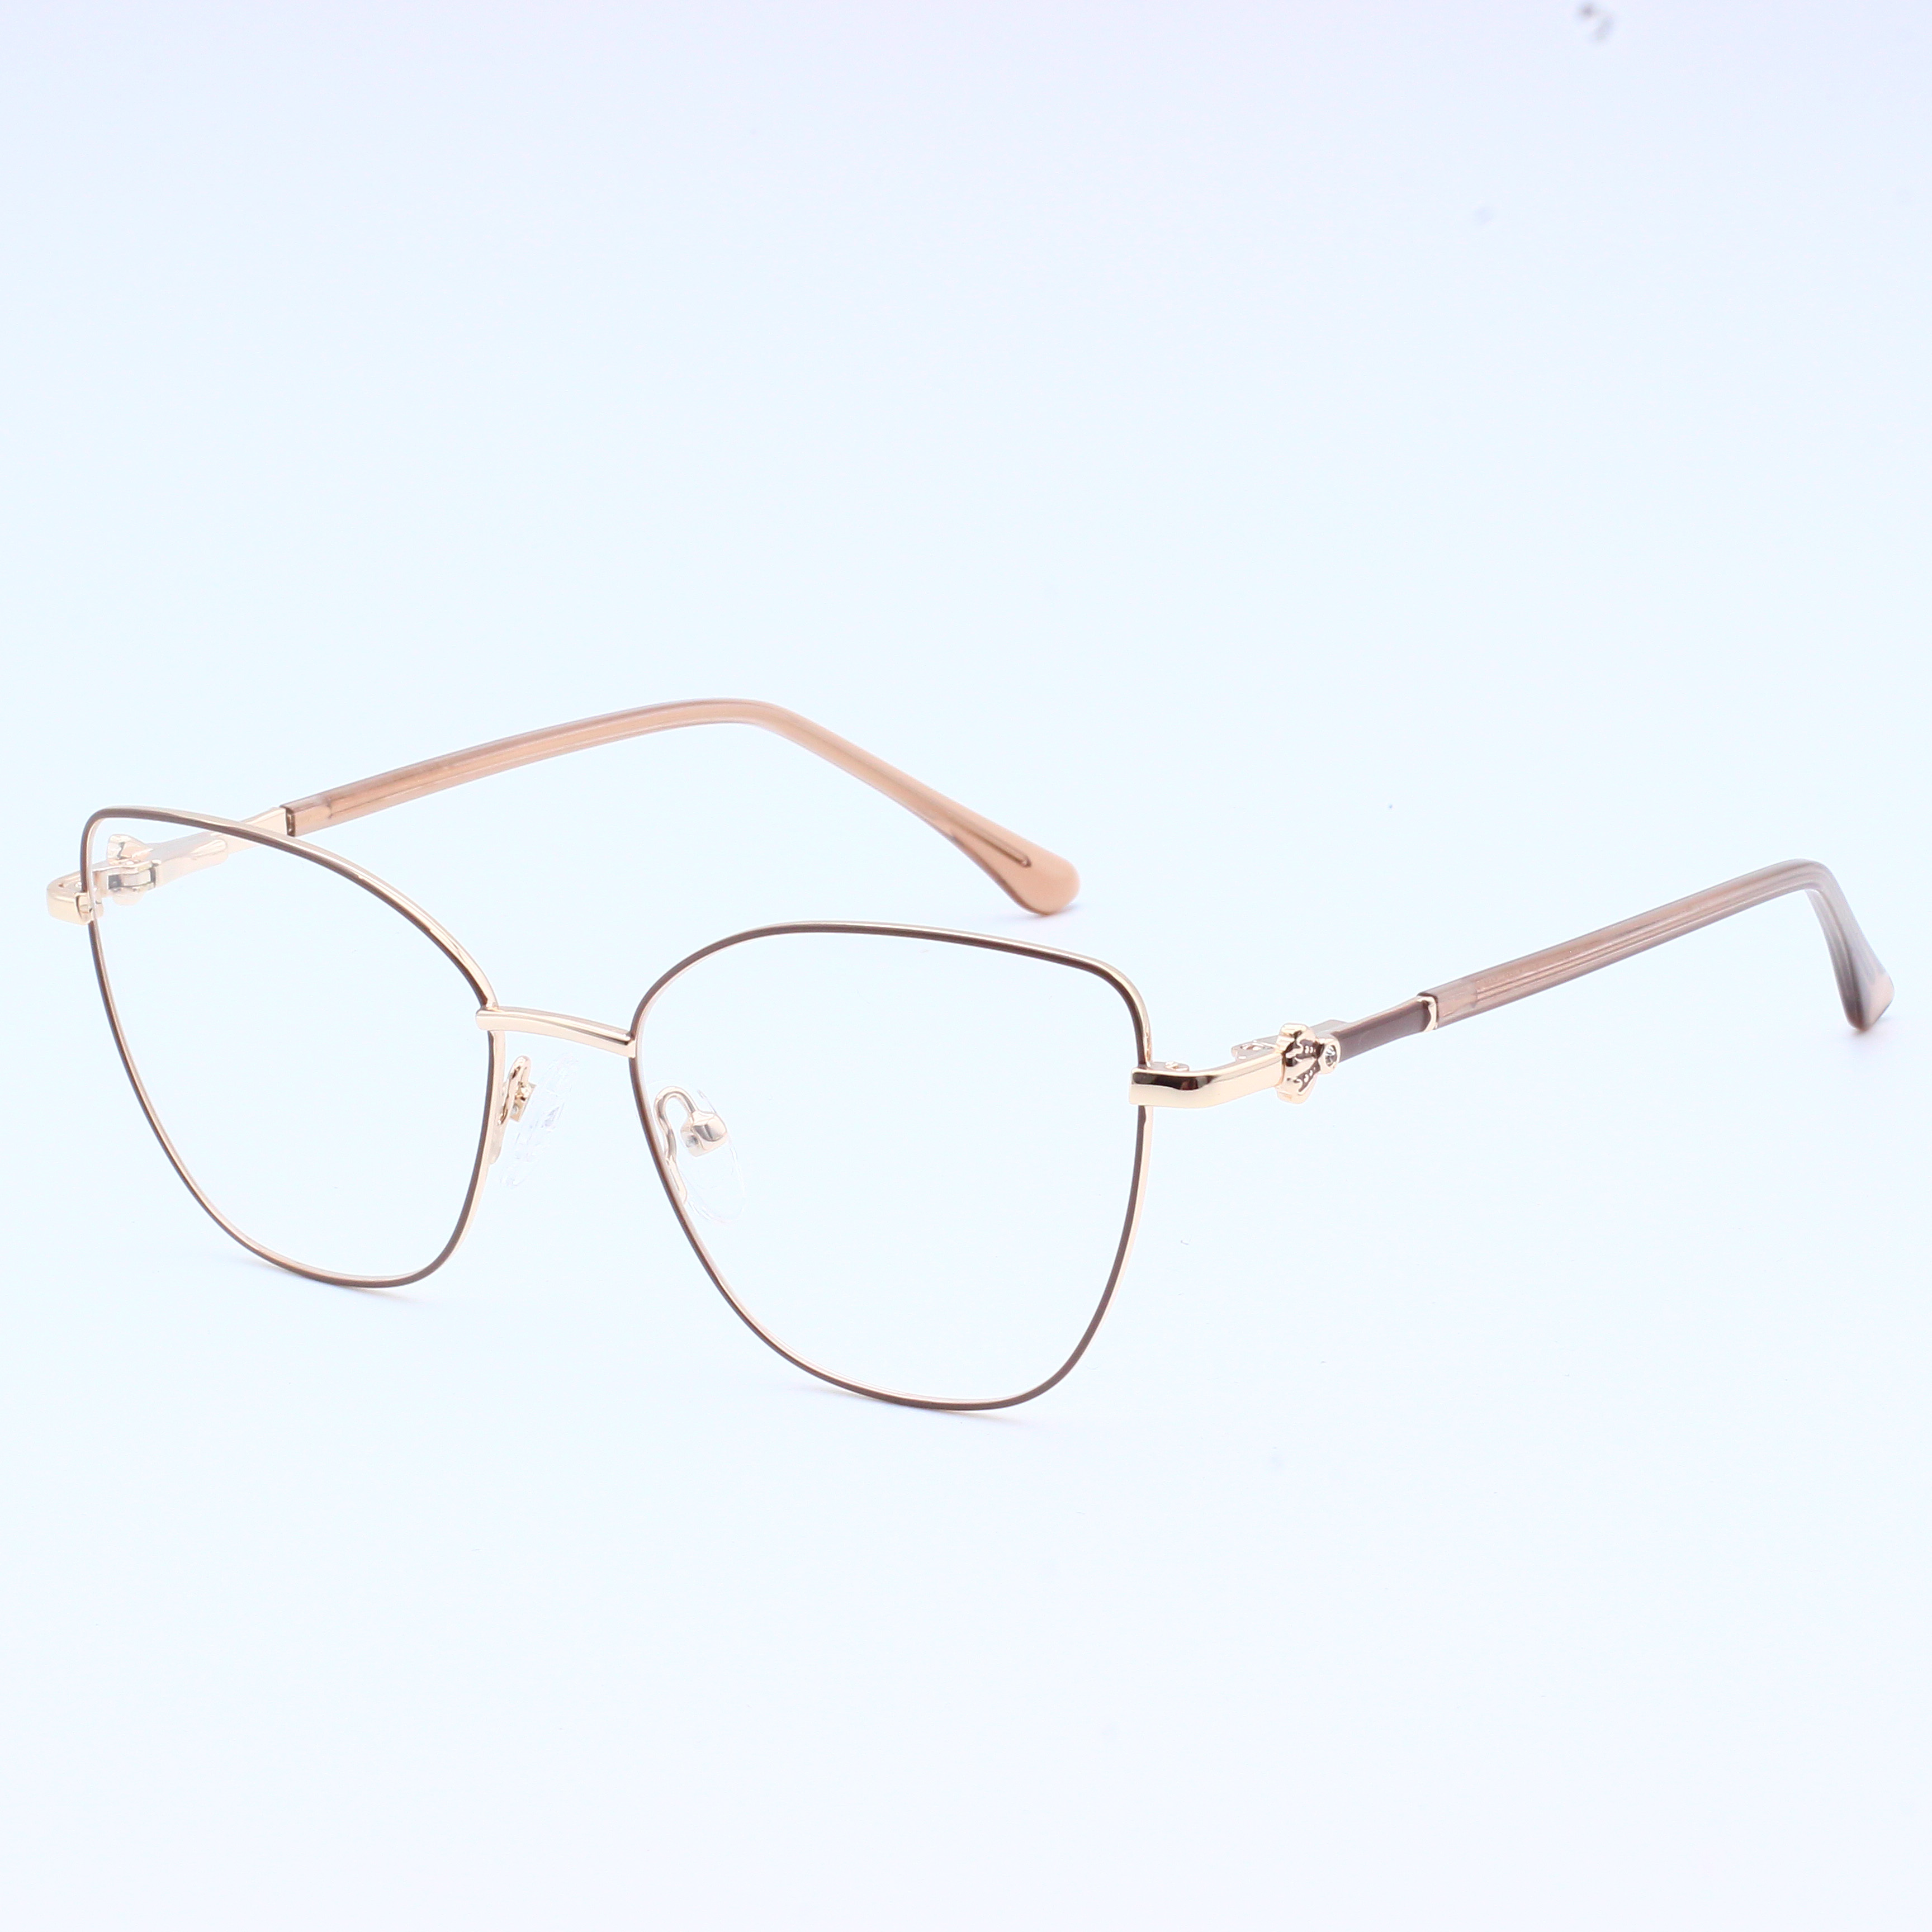 New Fashion Trend Metal Eyeglasses Frame (8)